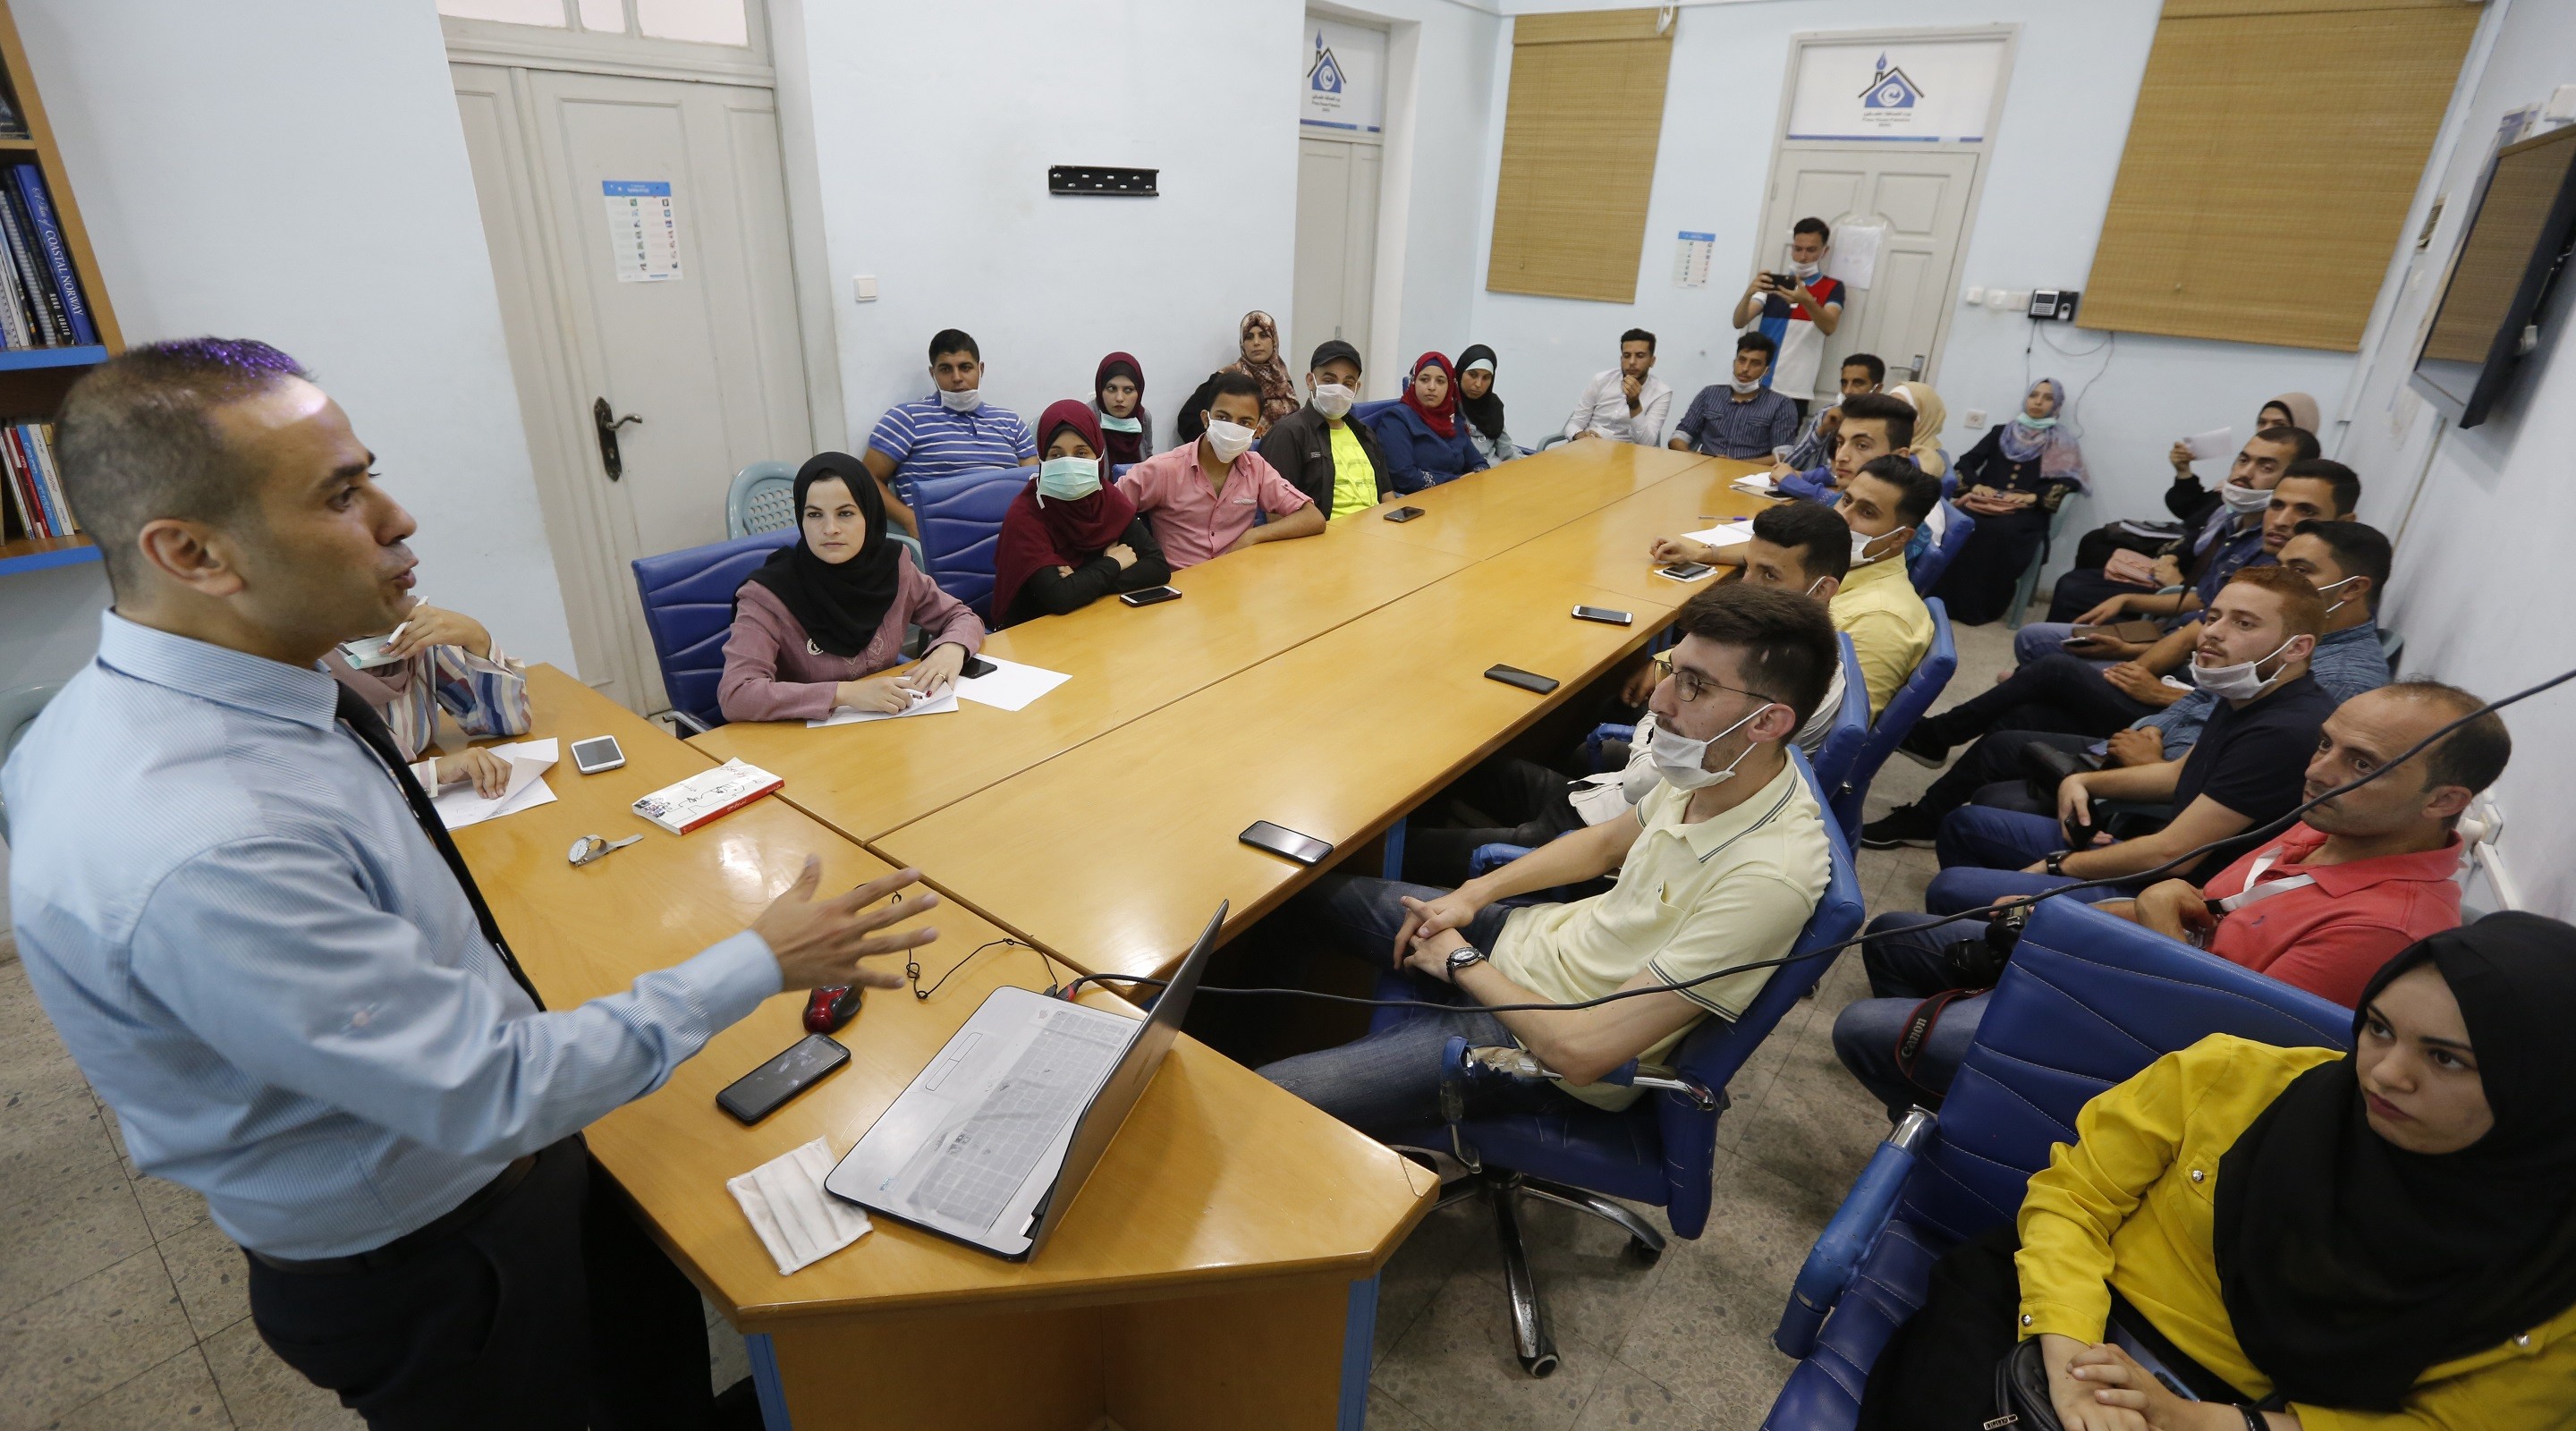 بيت الصحافة ينظم ورشة عمل بالشراكة مع وزارة الصحة الفلسطينية بغزة